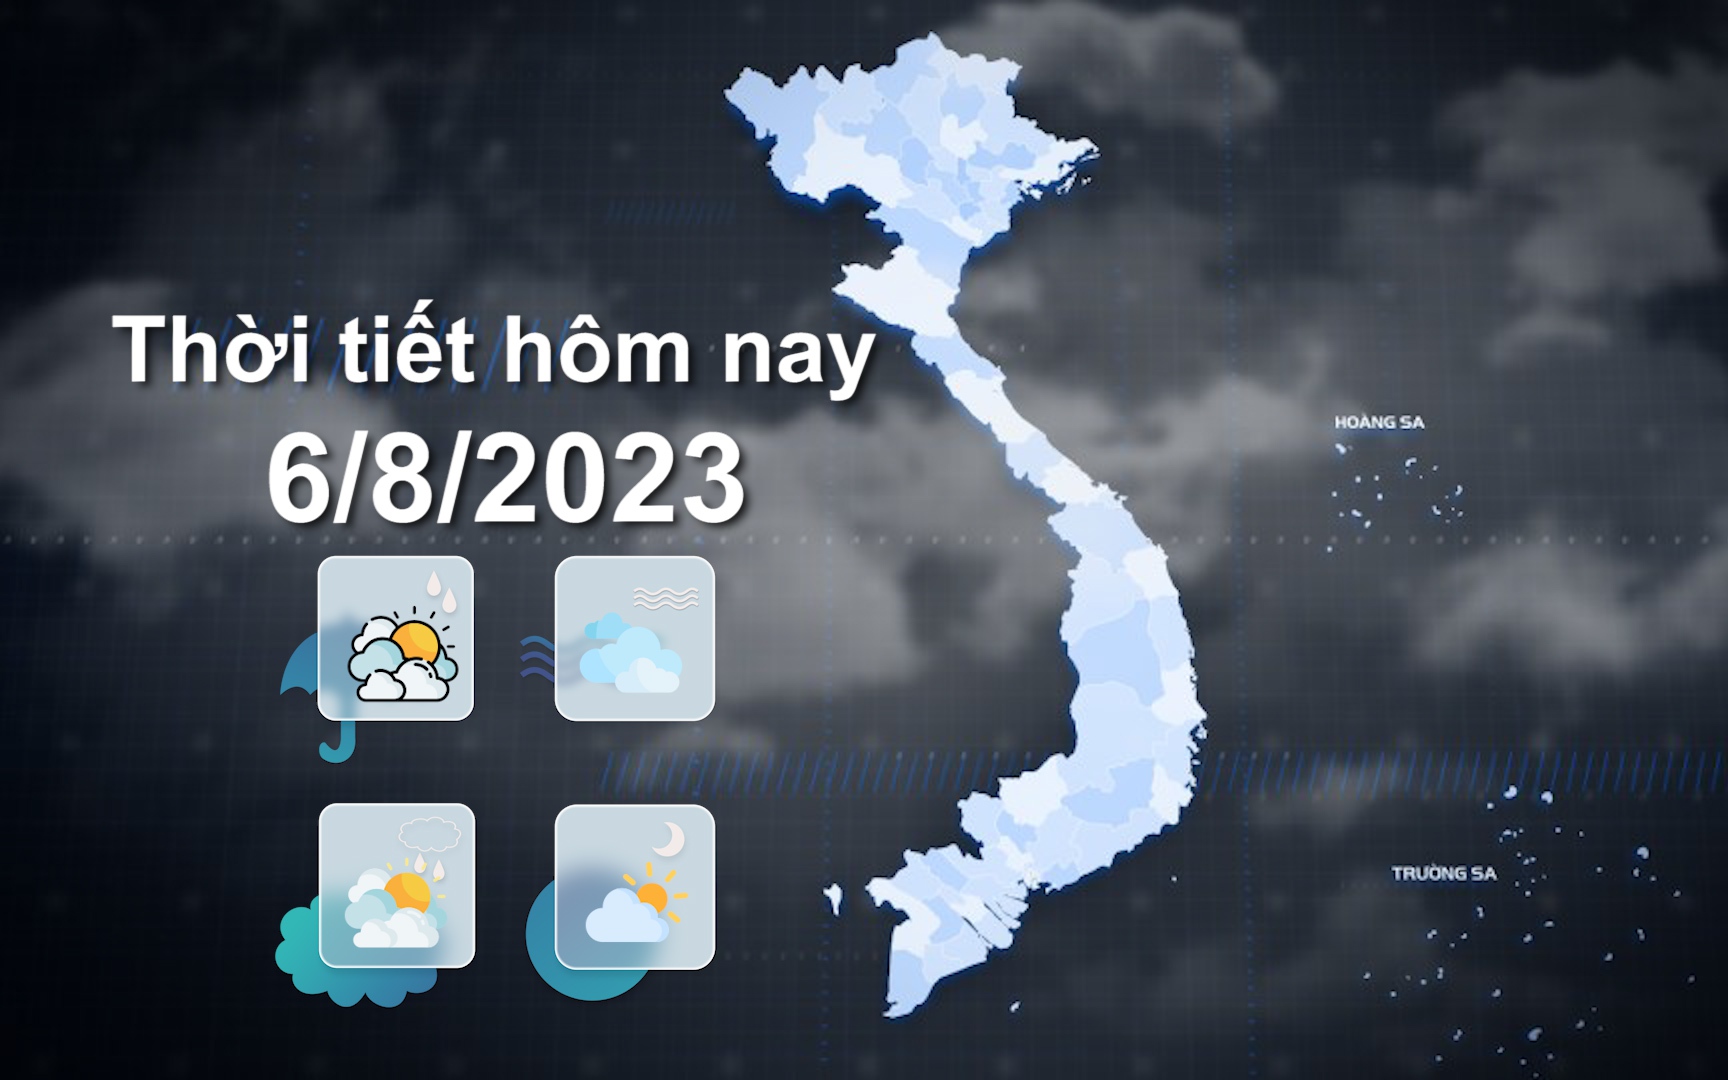 Thời tiết hôm nay 6/8/2023: Mưa lớn ở khu vực Bắc Bộ và Thanh Hóa